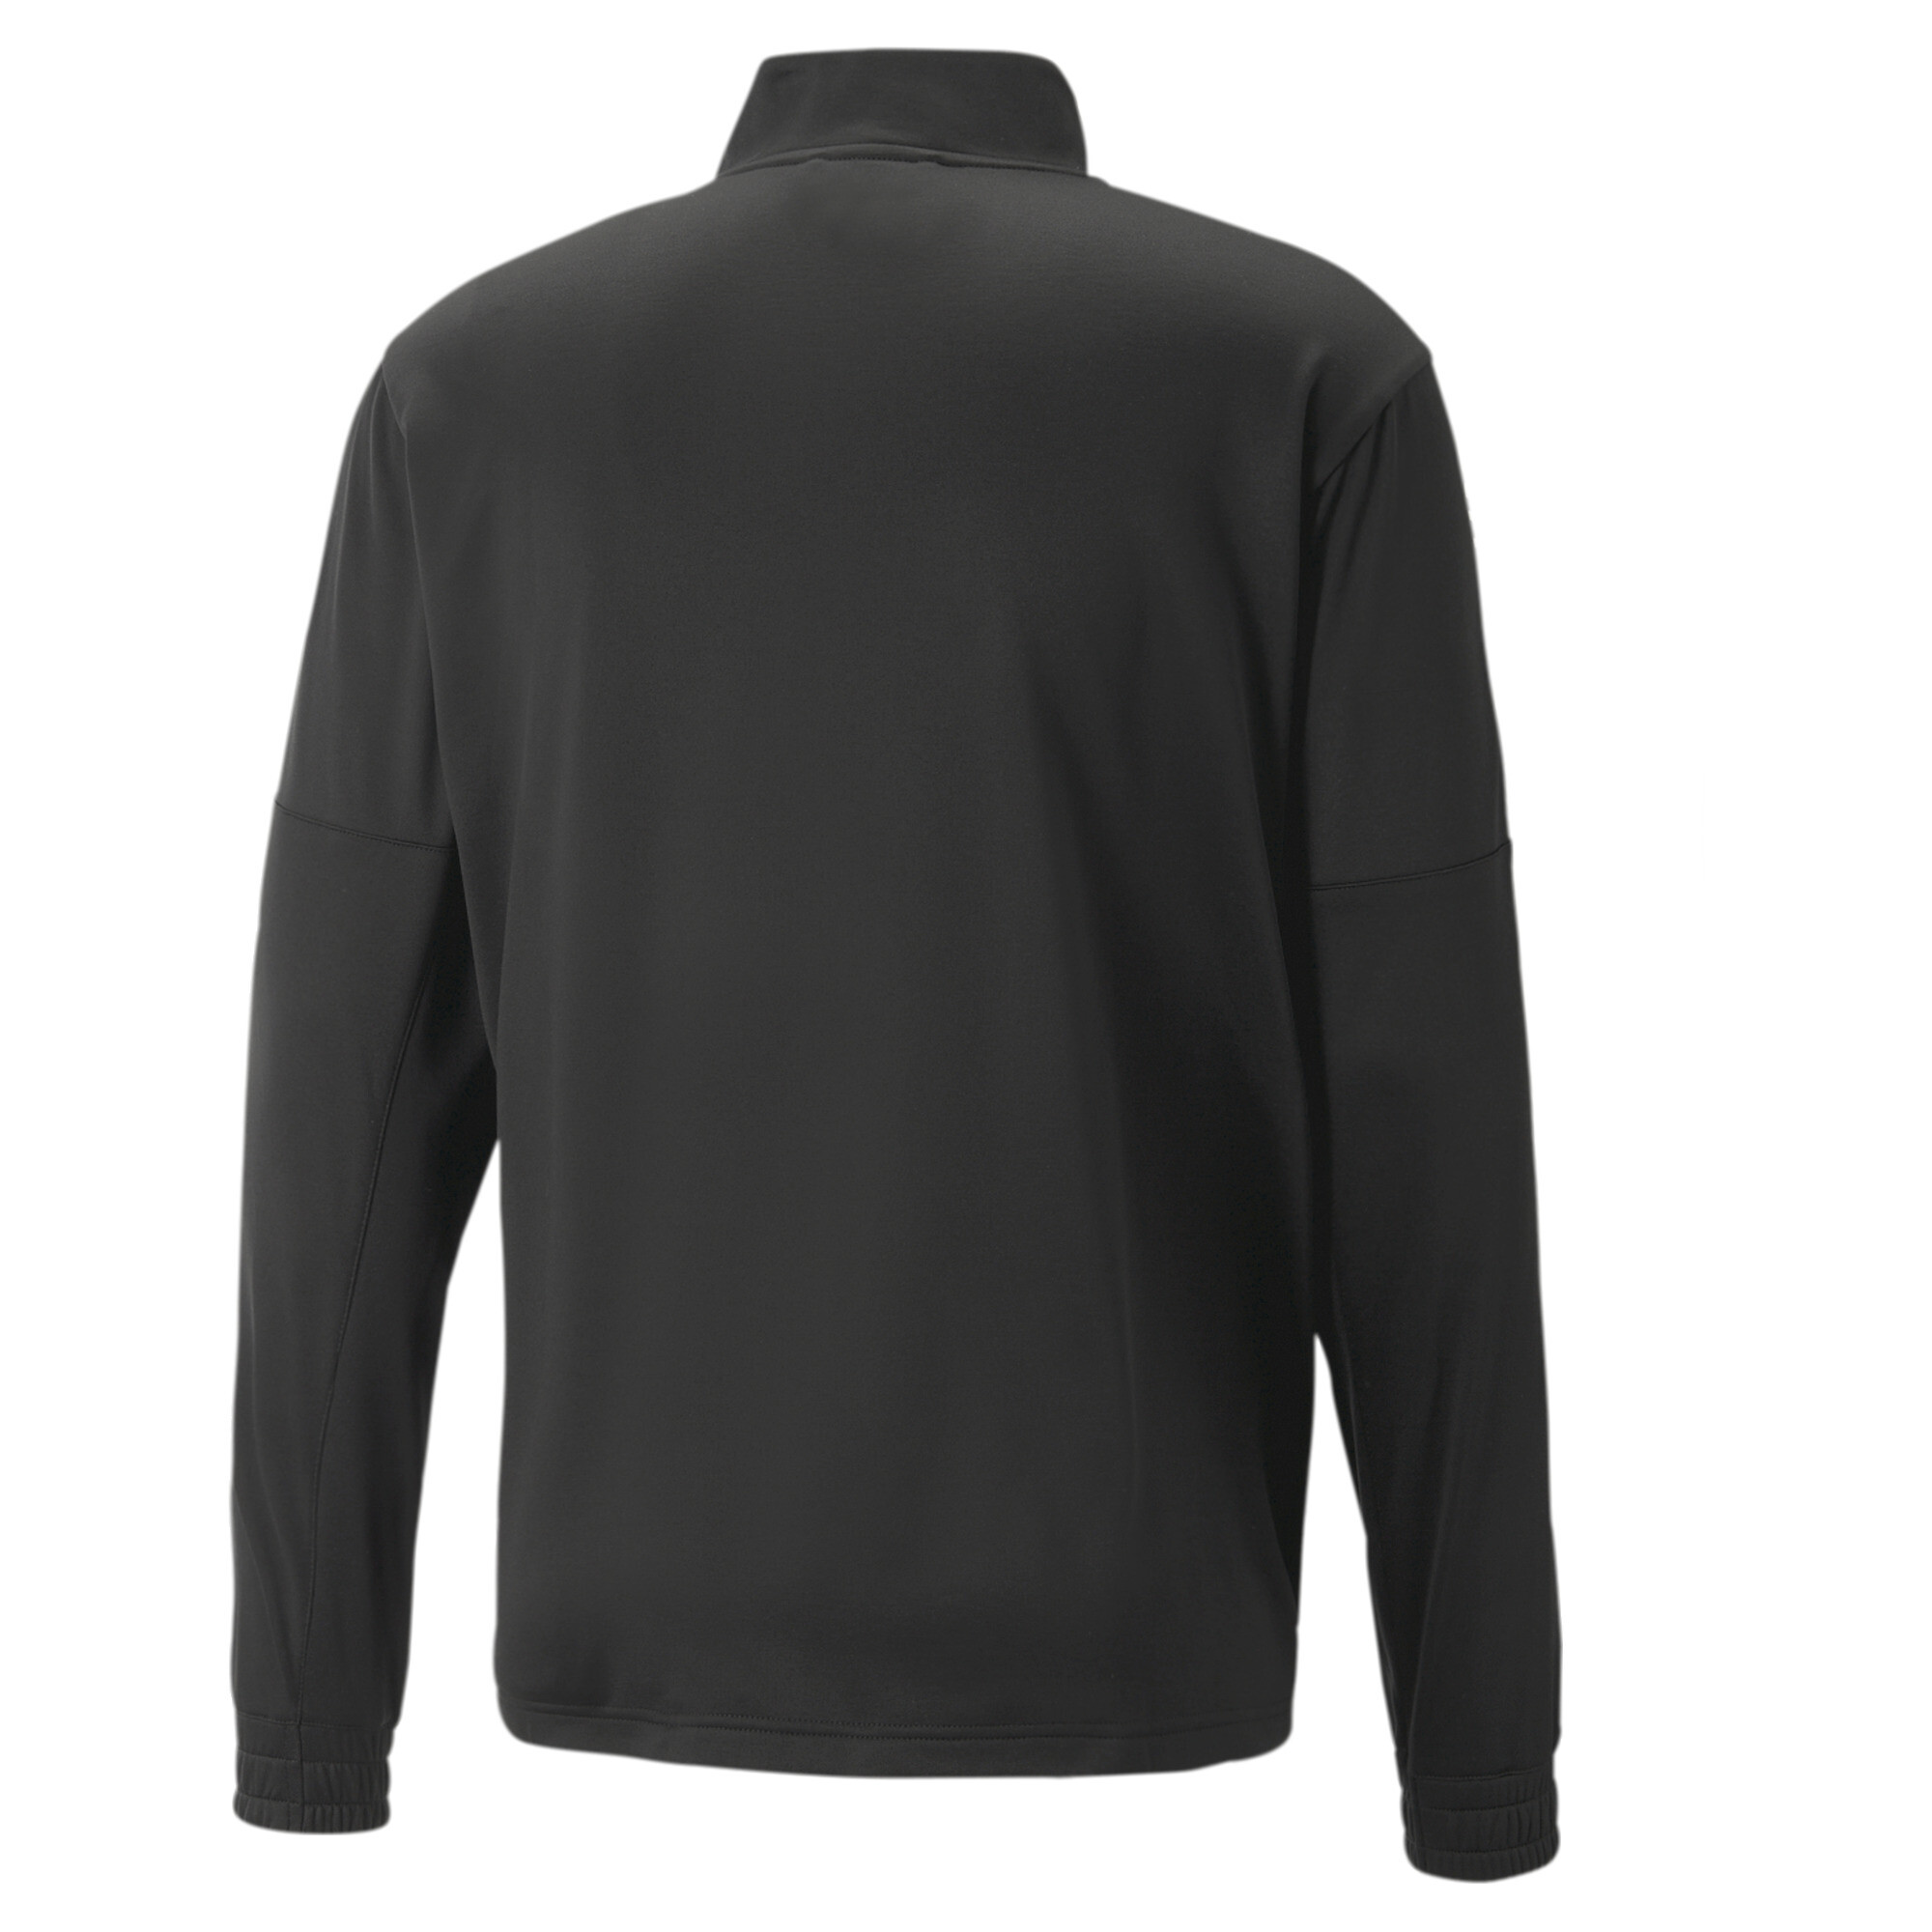 Men's PUMA Fit Light PWRFLEECE Full-Zip Training Jacket Men In Black, Size Small